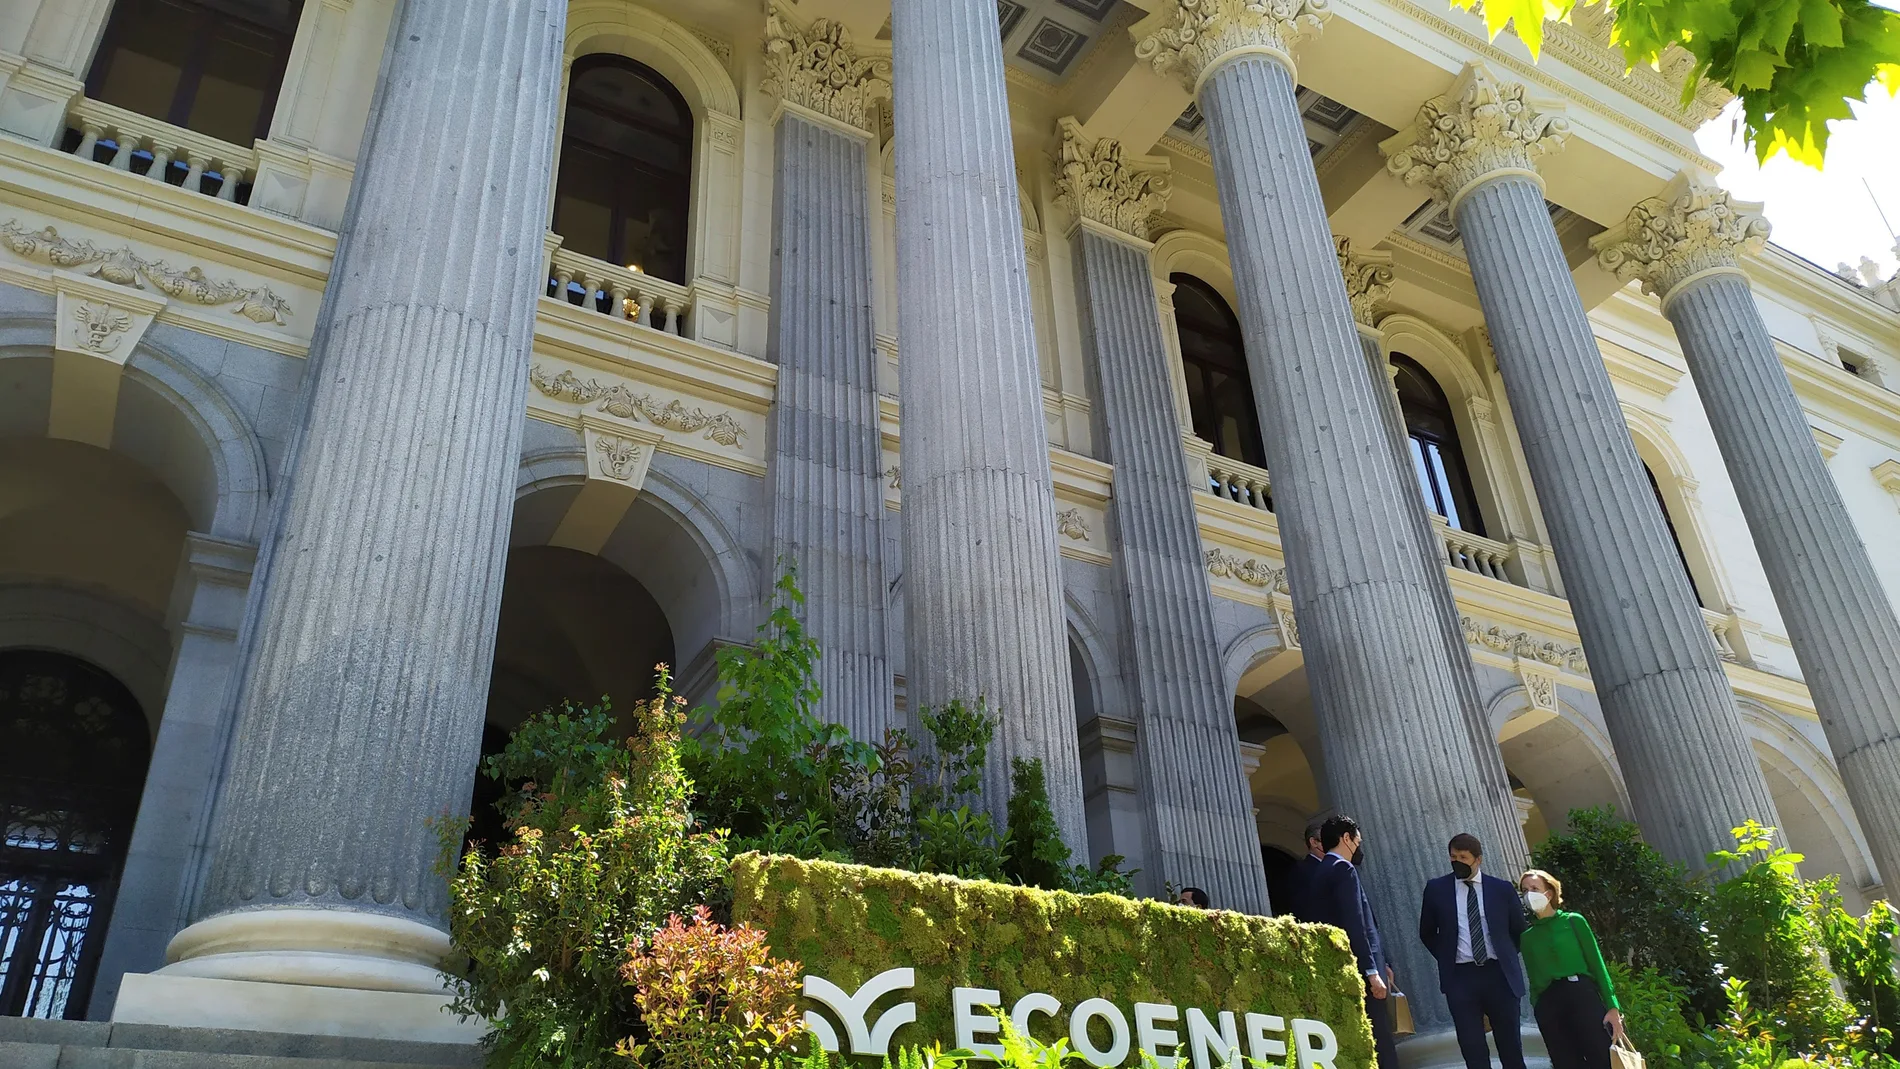 El logotipo de Ecoener decora la fachada del Palacio de la Bolsa en Madrid con motivo de su debut, ayer, en bolsa